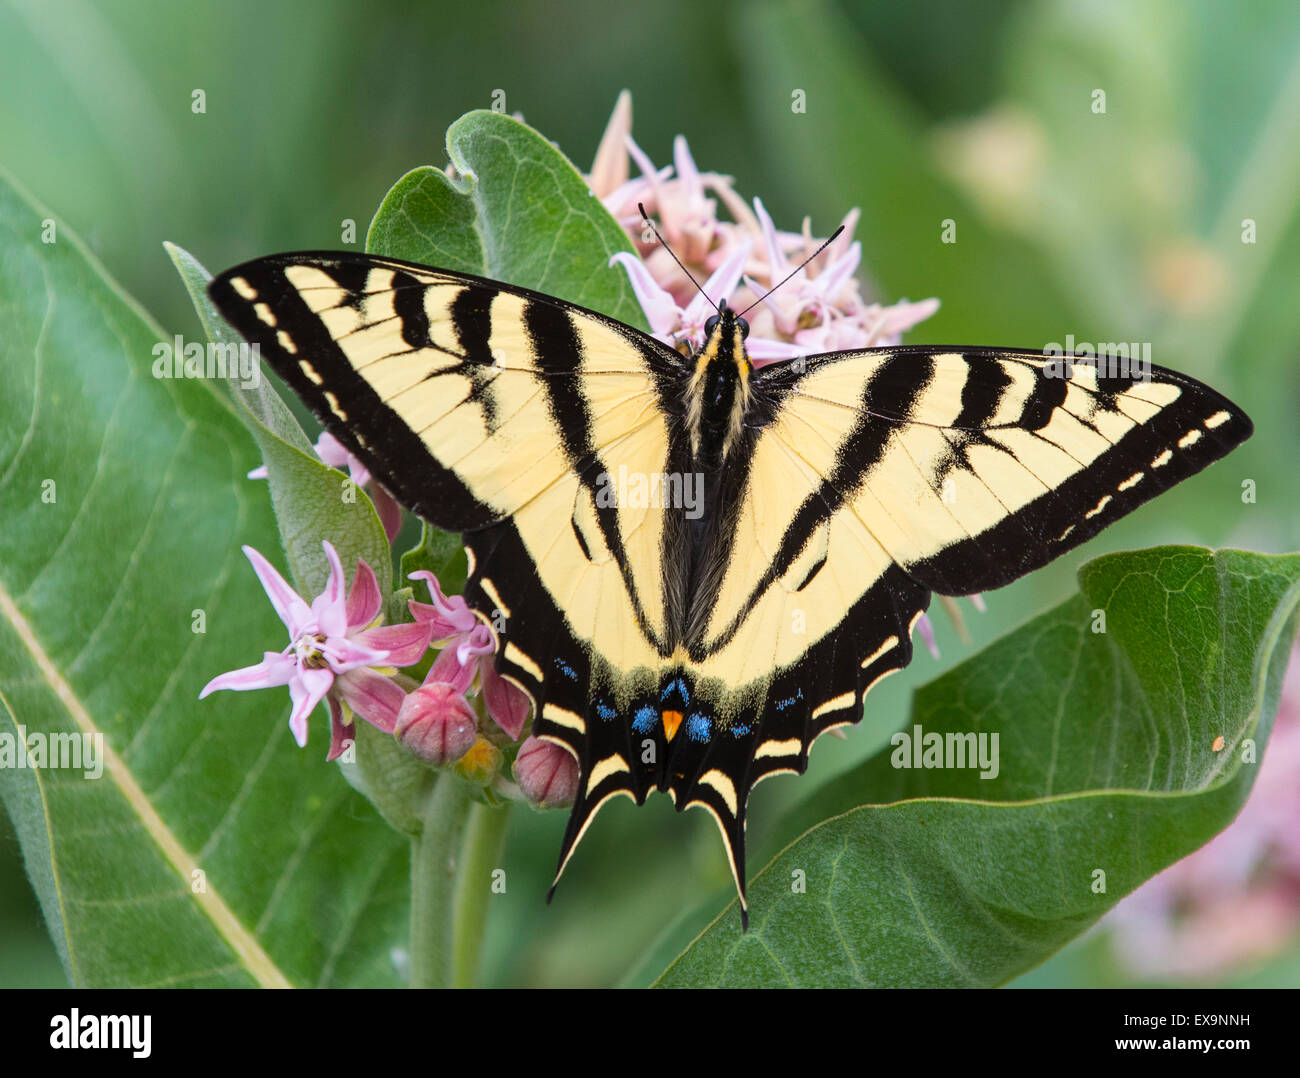 Les papillons, de l'Est Tiger Swallowtail Butterfly se nourrissant de necteur à partir d'un plant d'Asclépiade floraison. New York, USA, Amérique du Nord Banque D'Images